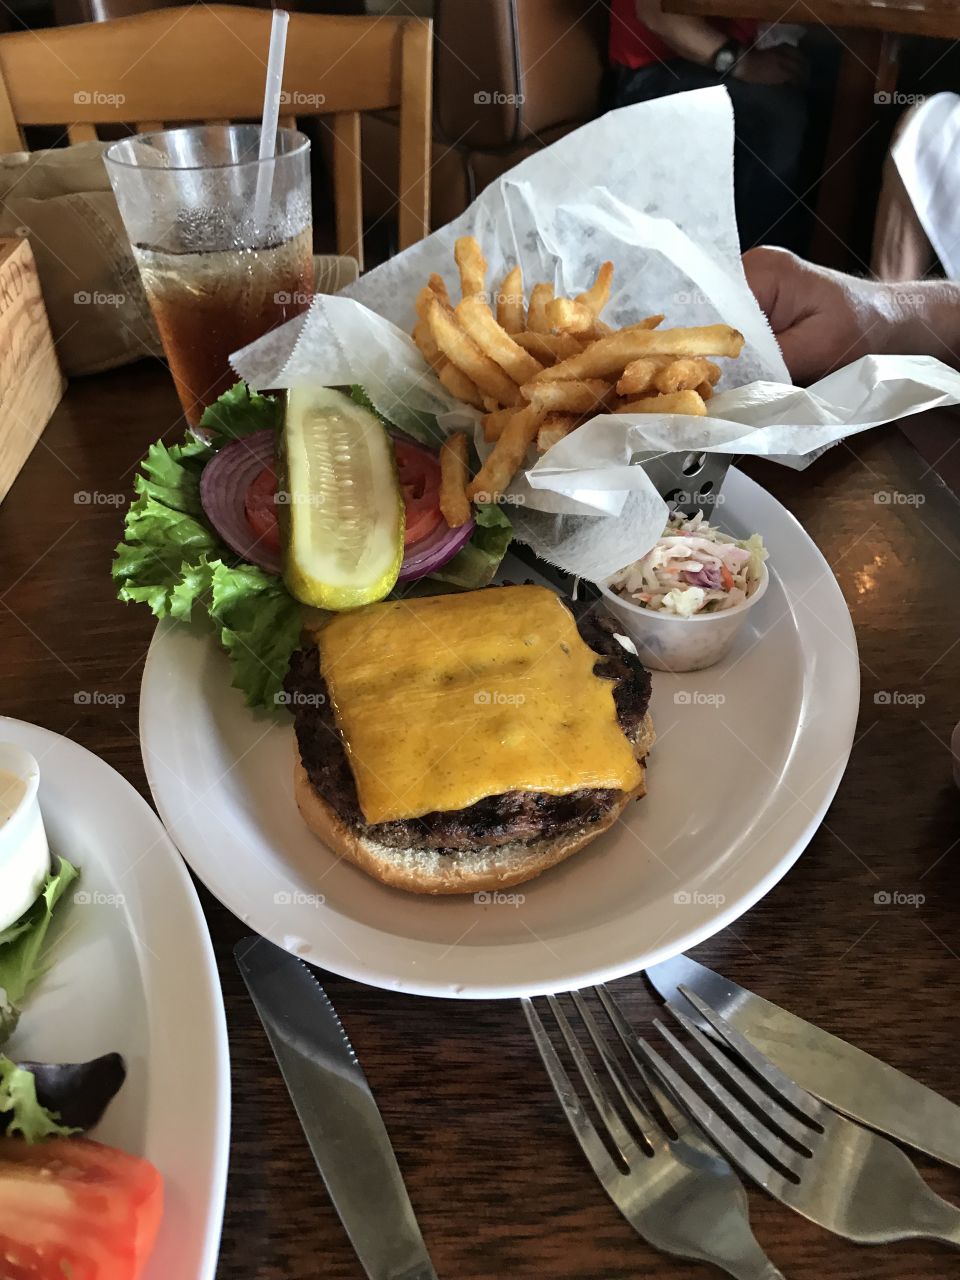 Look at the big cheeseburger and yummy!